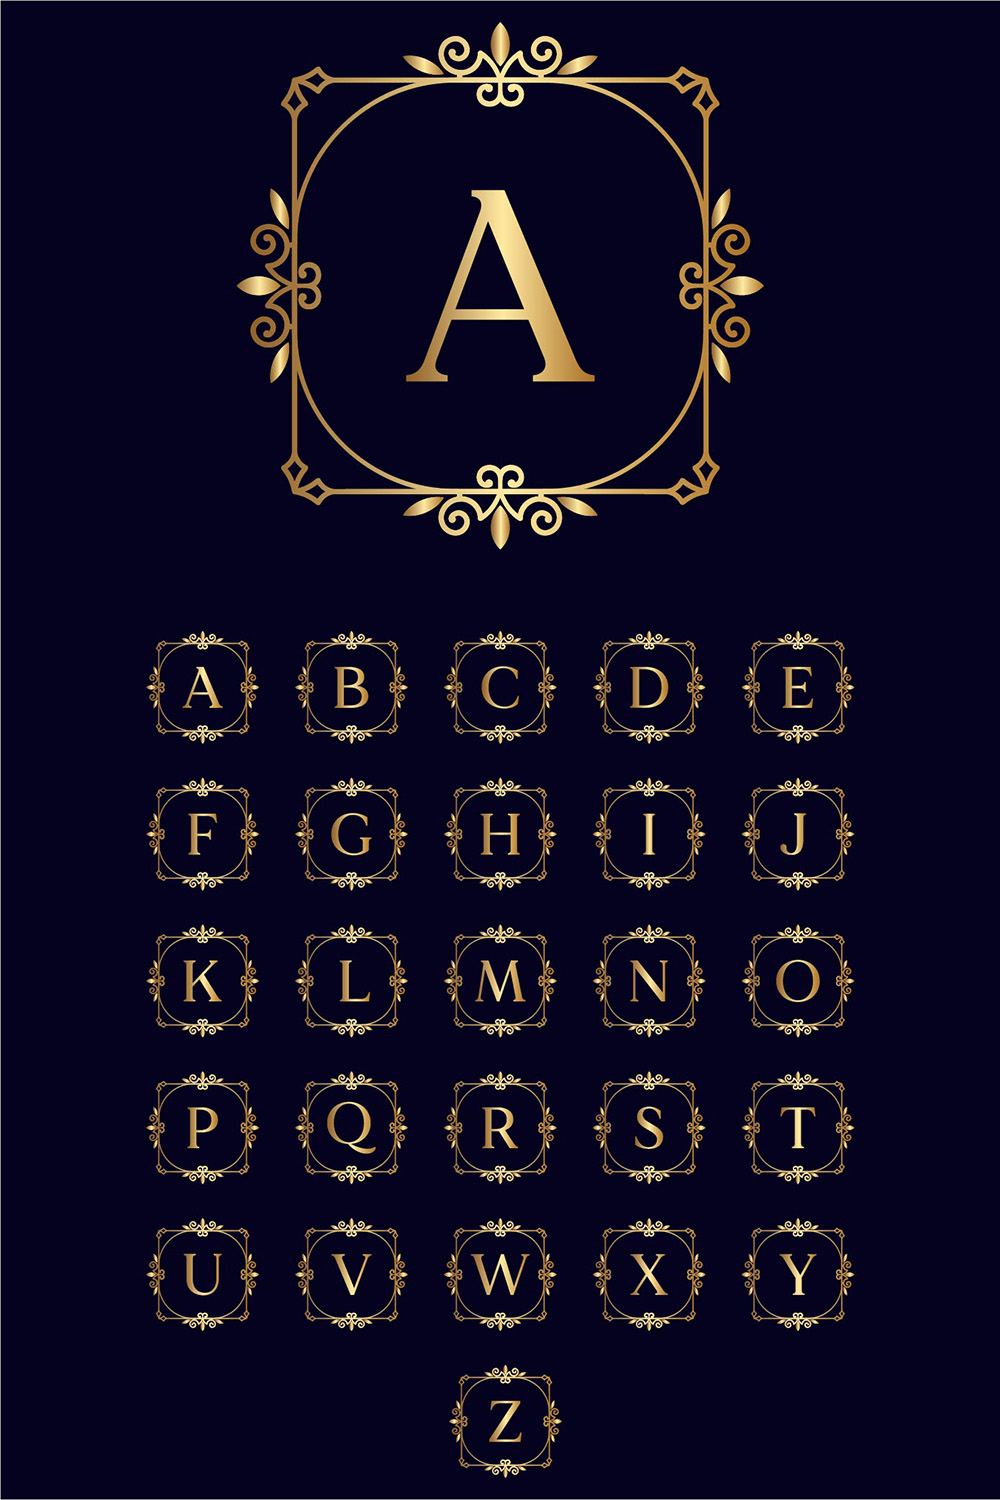 Artistic Gold Letter Logos Design pinterest image.